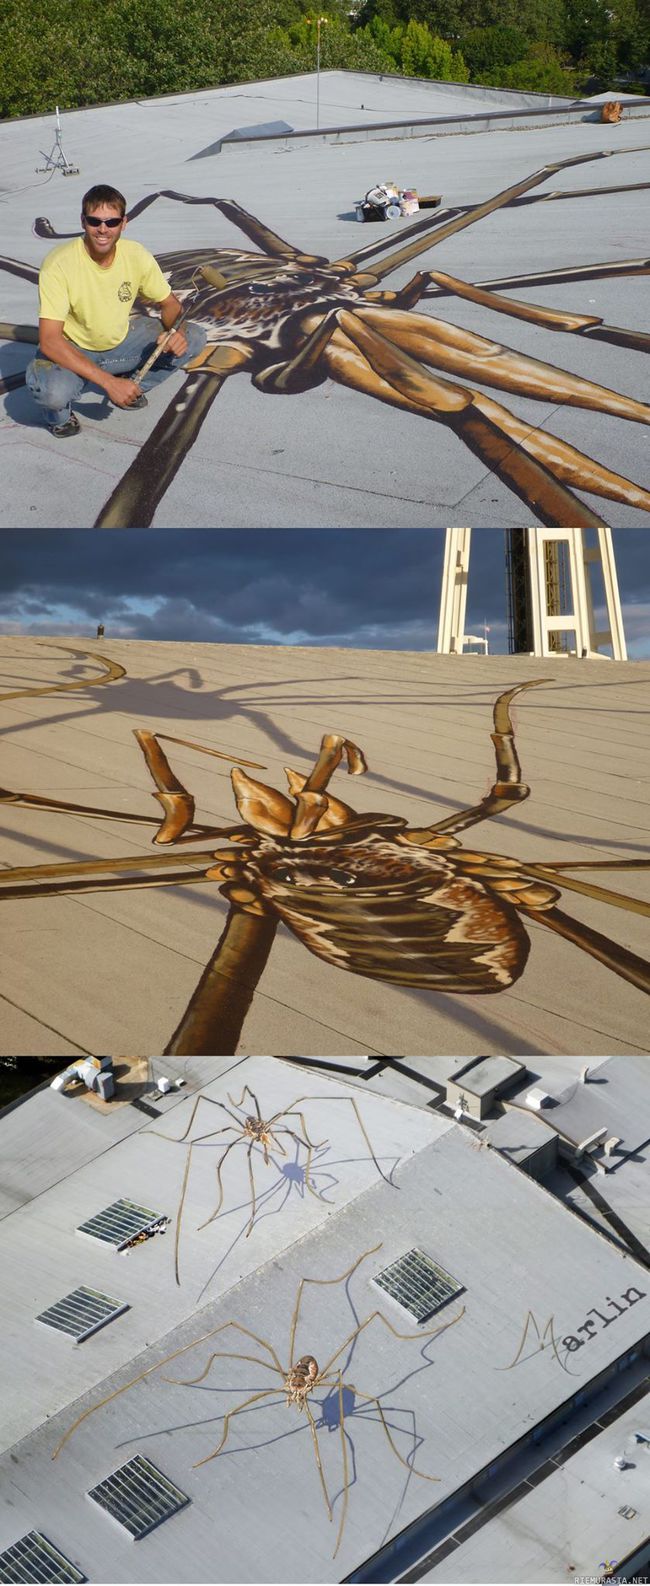 Jättiläishämähäkkejä rakennuksen katolla - Taiteilija Marlin Peterson on maalannut rakennuksen katolle hienoja kolmiulotteisia hämähäkkejä jekuttamaan lentokoneita sekä seattlen space needlessa maisemia katsovia ihmisiä.

Lisää aiheesta: http://urbanshit.de/spider-rooftop-by-marlin-peterson